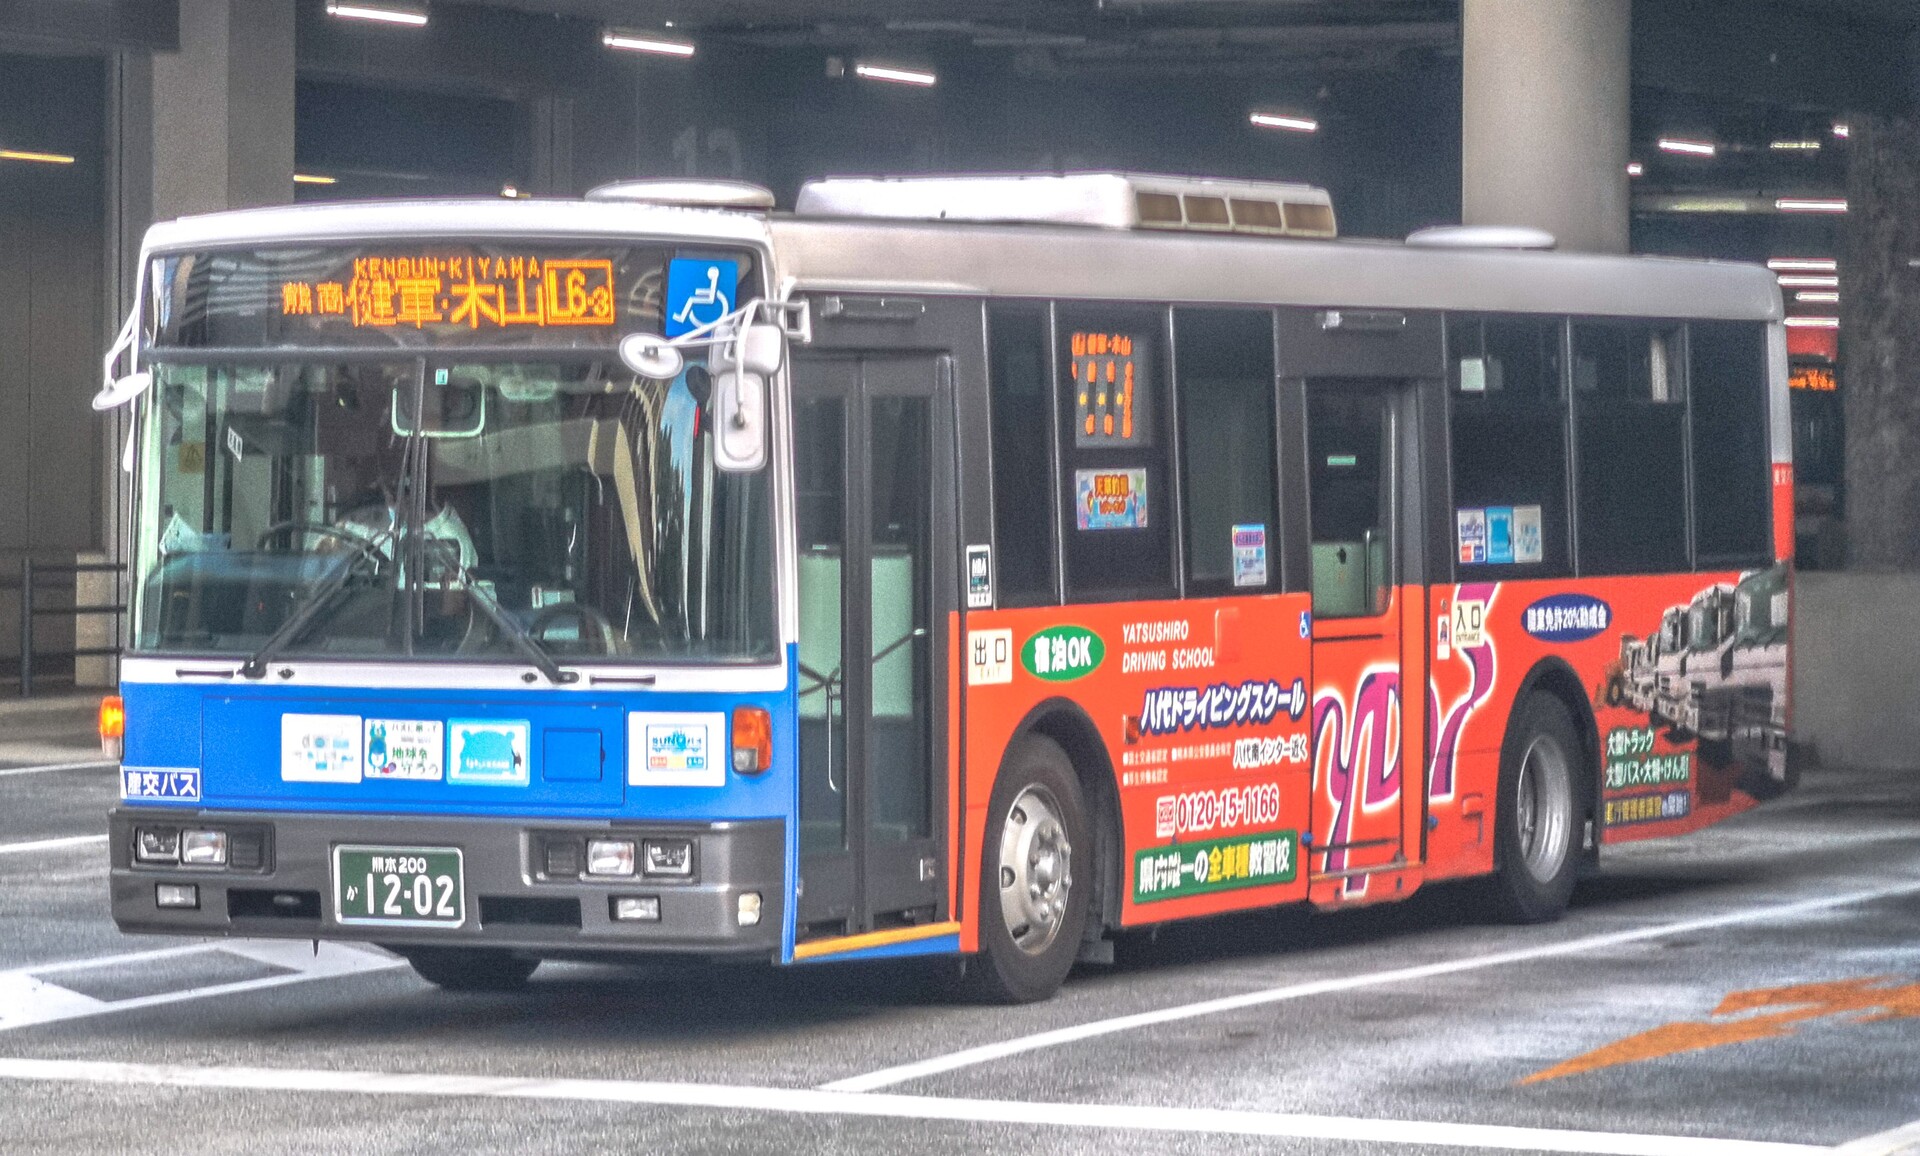 九州産交バス 熊本0か12 ｂｕｓ画像館熊本 全国初 熊本の路線バス 運行事業者５社は サービスの維持 拡充の為 21年4月1日 木 より共同経営型の事業形態へ移行しました